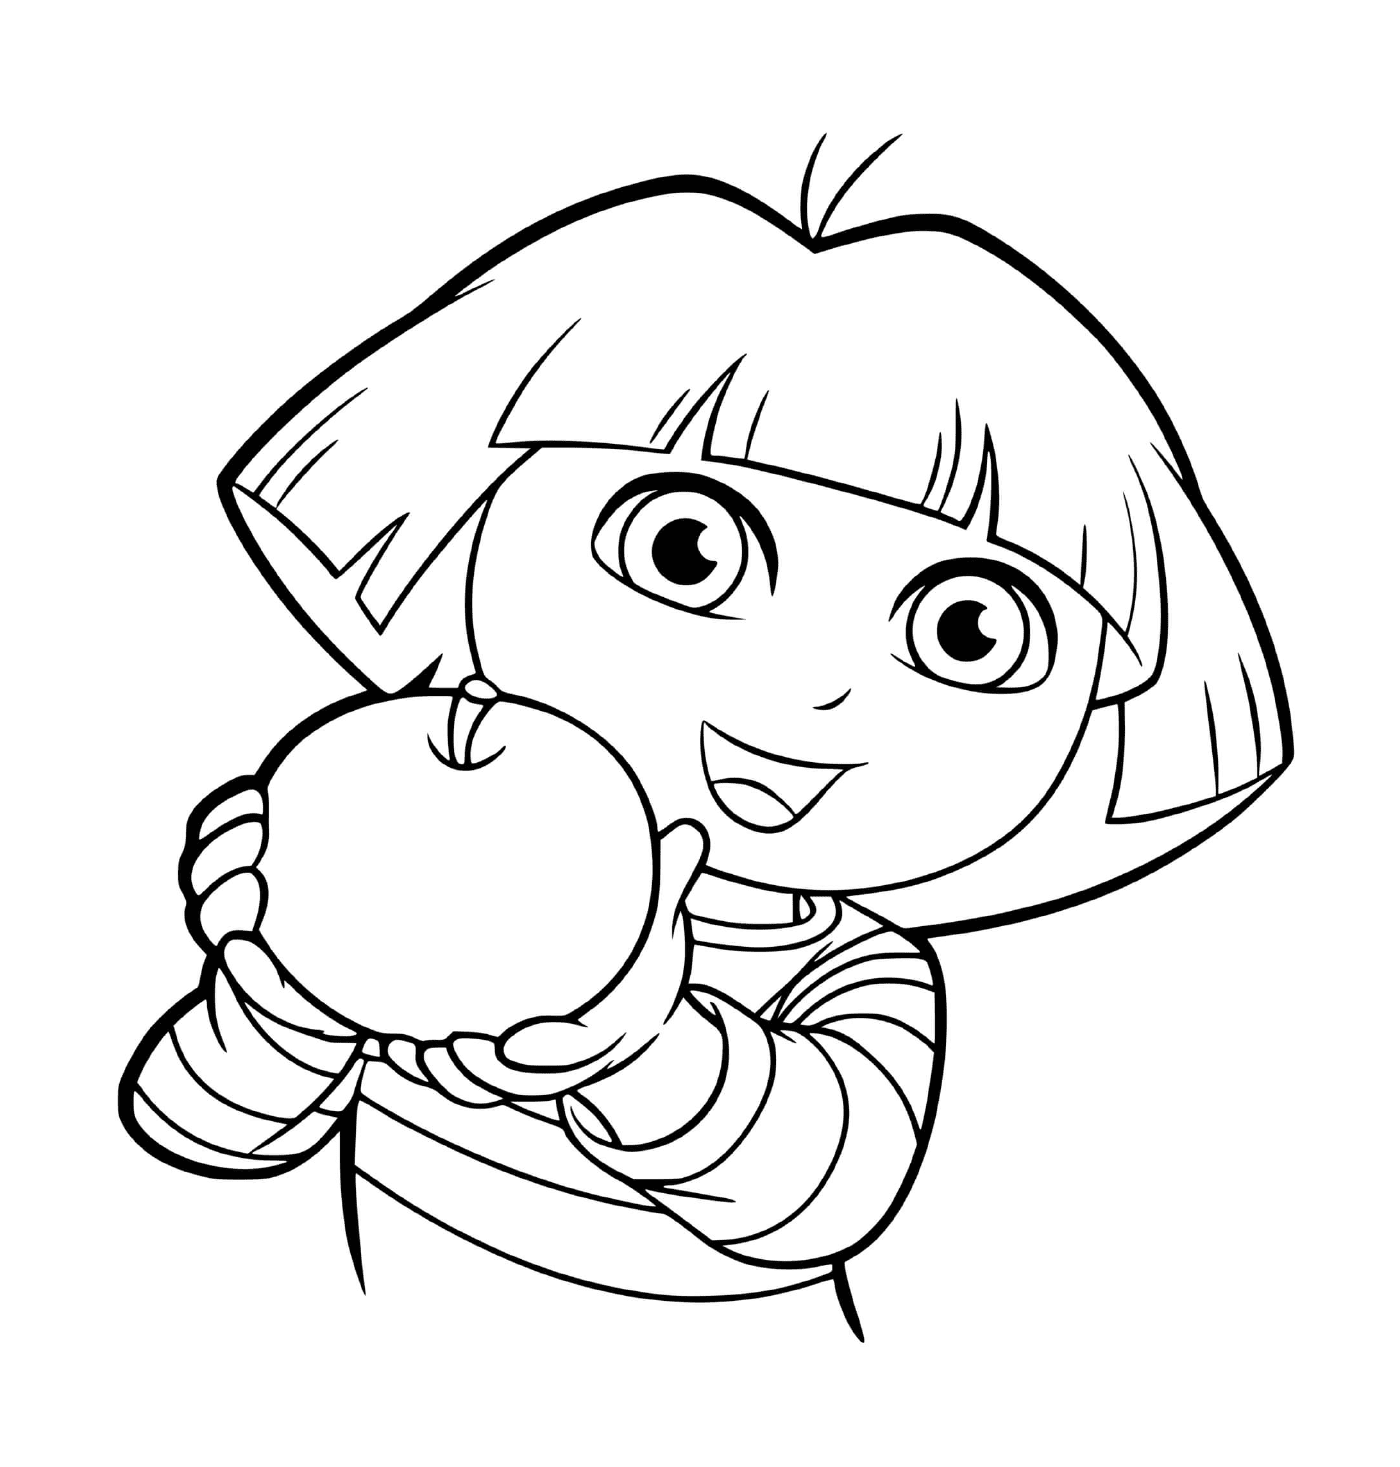  Dora ama mangiare mele con appetito 